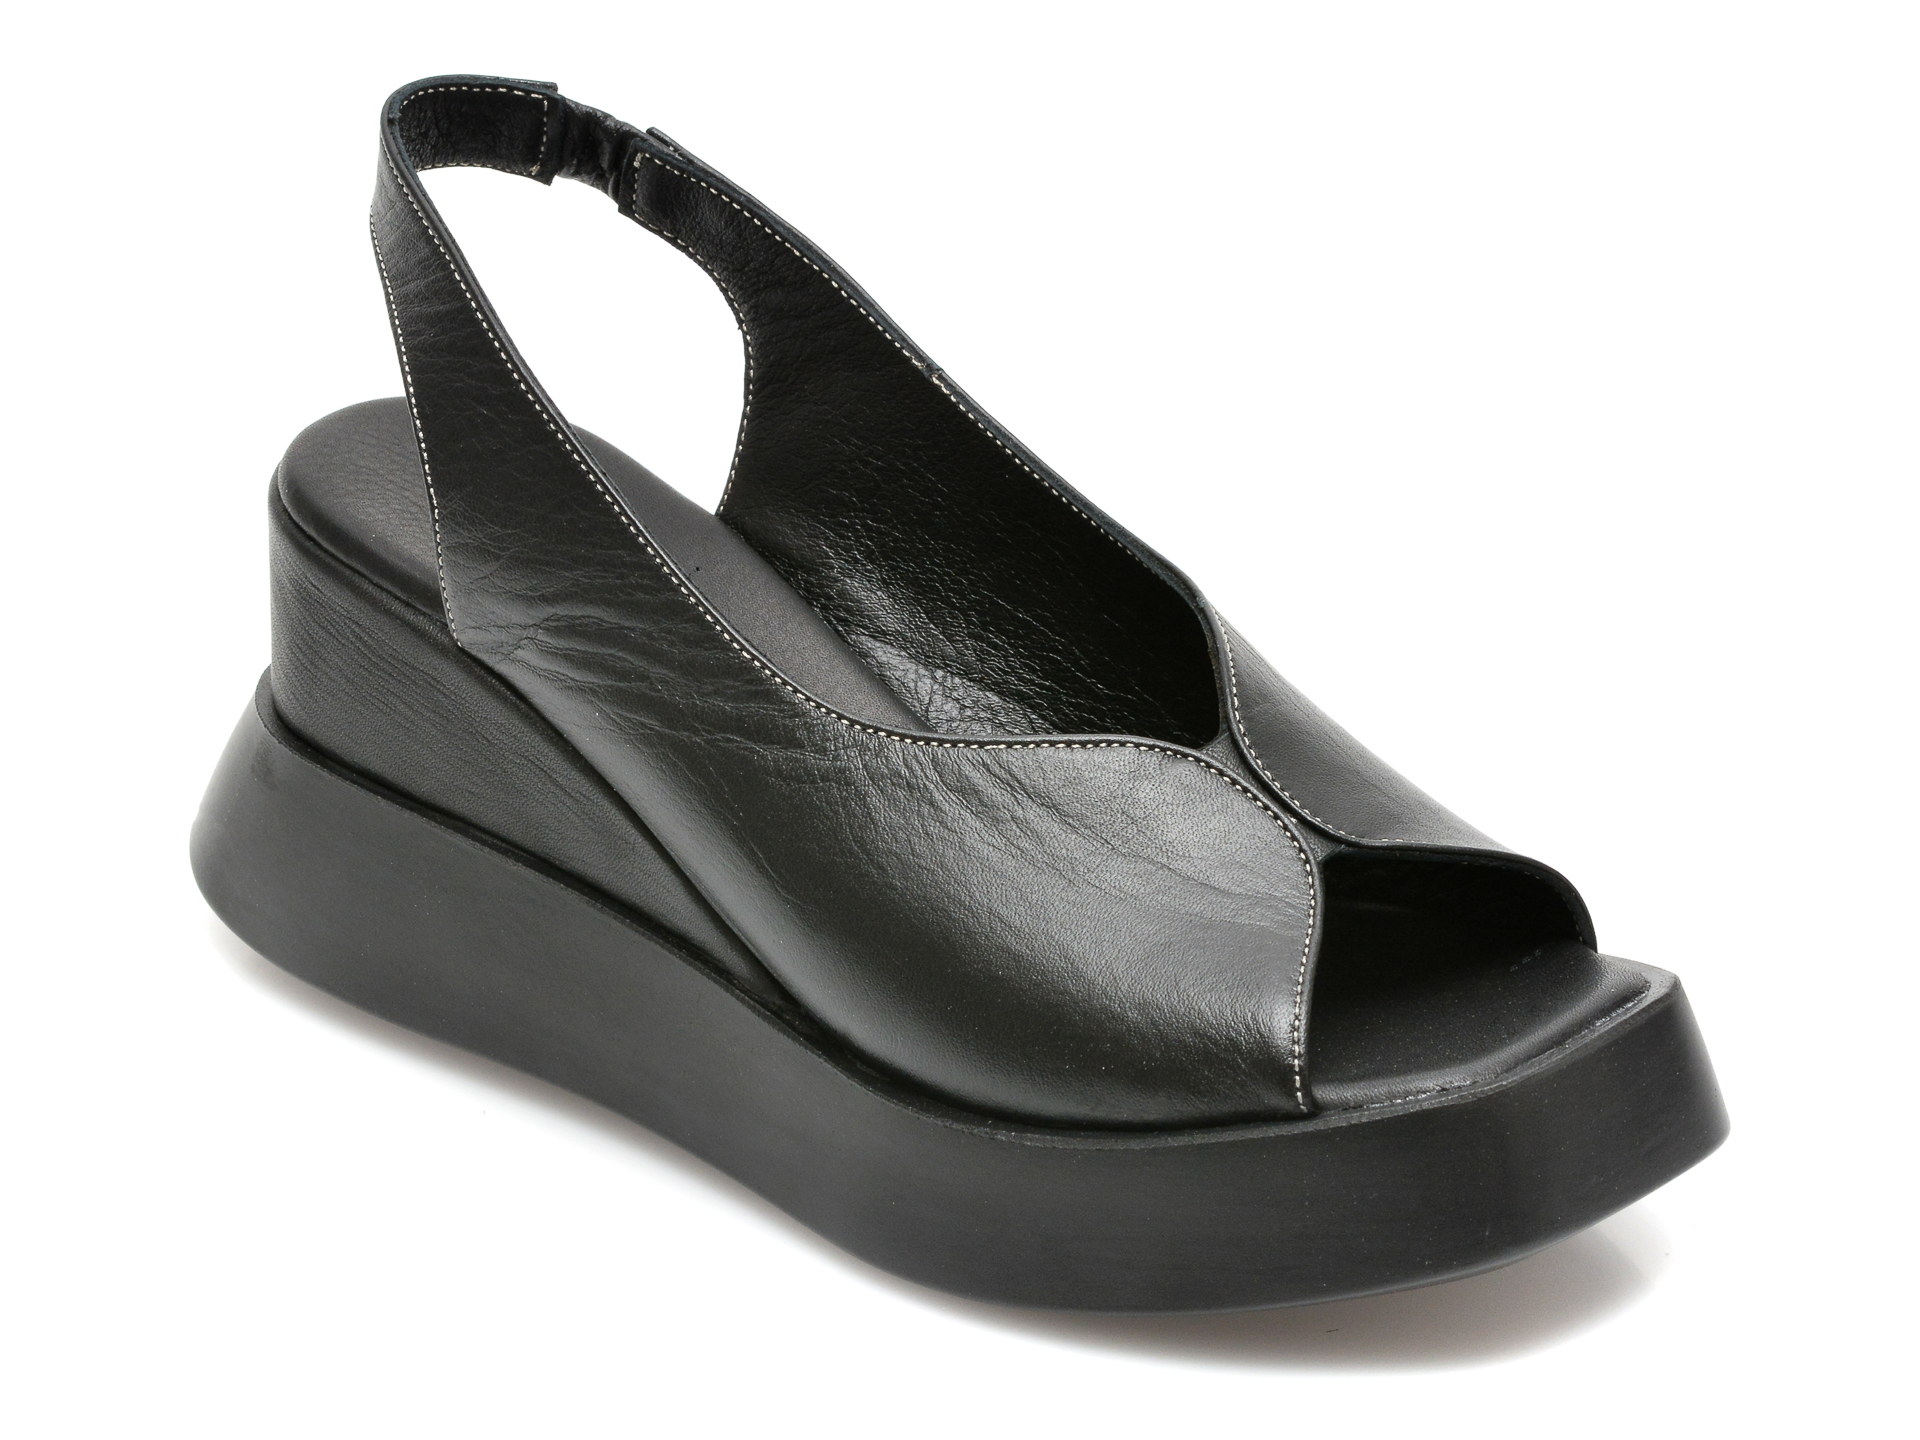 Sandale FLAVIA PASSINI negre, 21350, din piele naturala Flavia Passini Flavia Passini